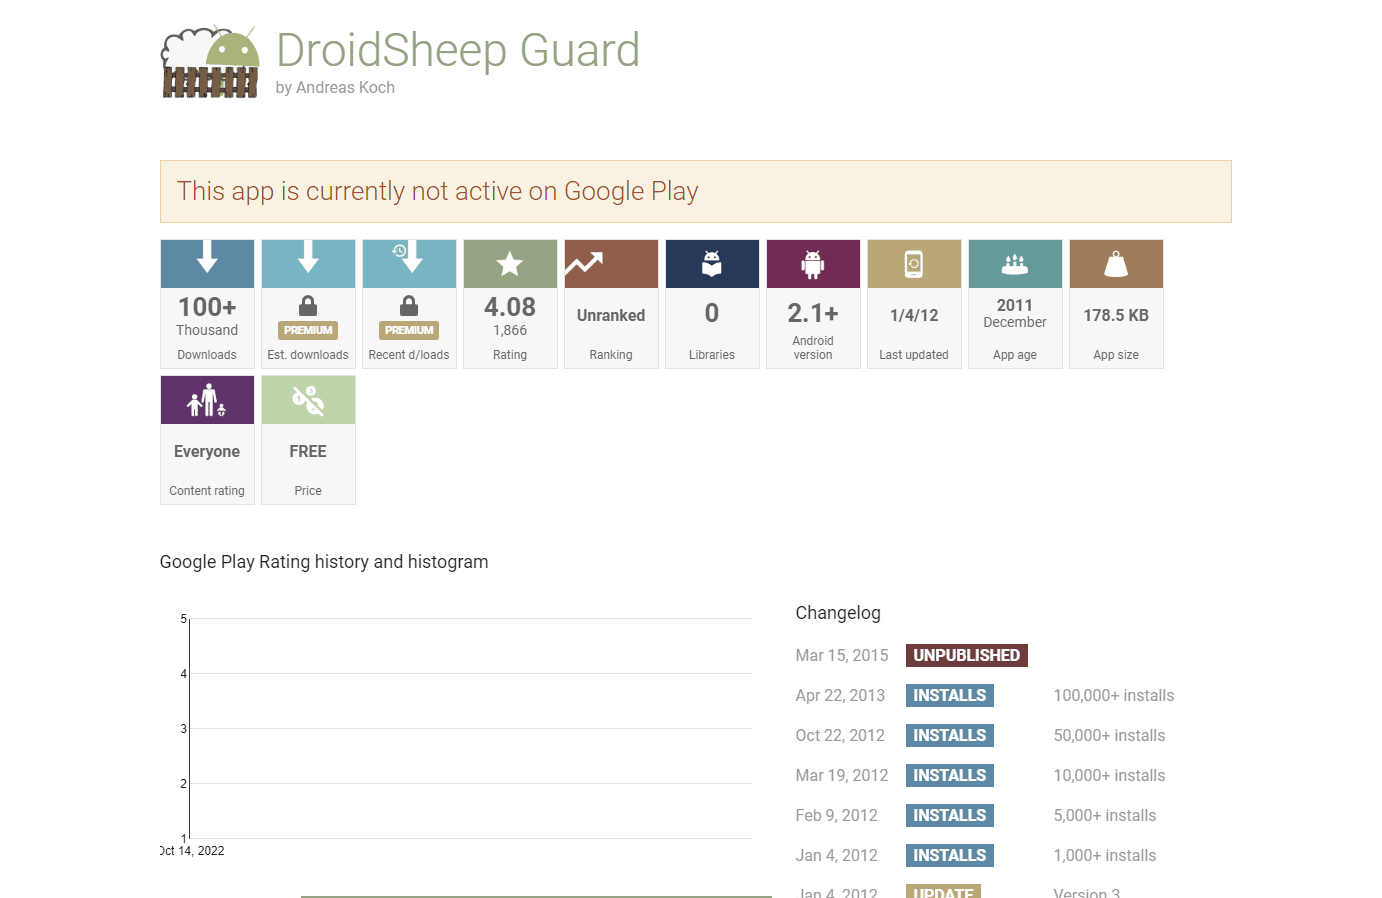 DroidSheep Guard